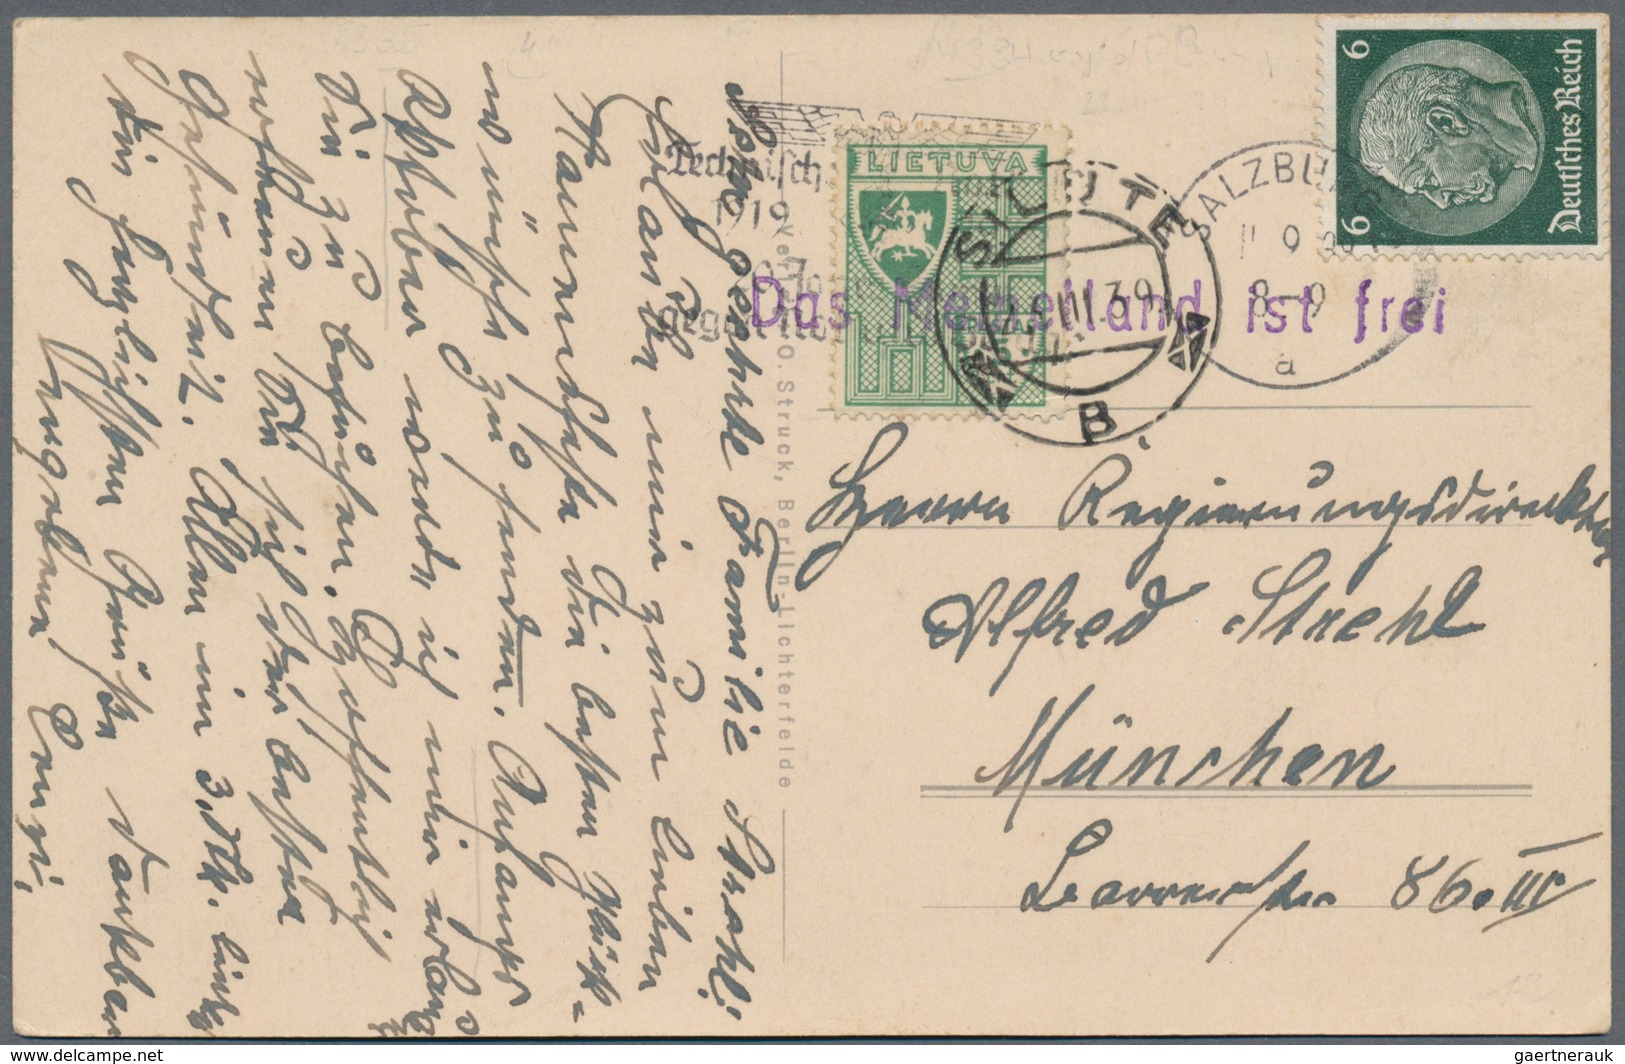 Memel: 1830/1941 (ca.), vielseitige Partie von ca. 45 Briefen und Karten (weniger das eigentliche Sa